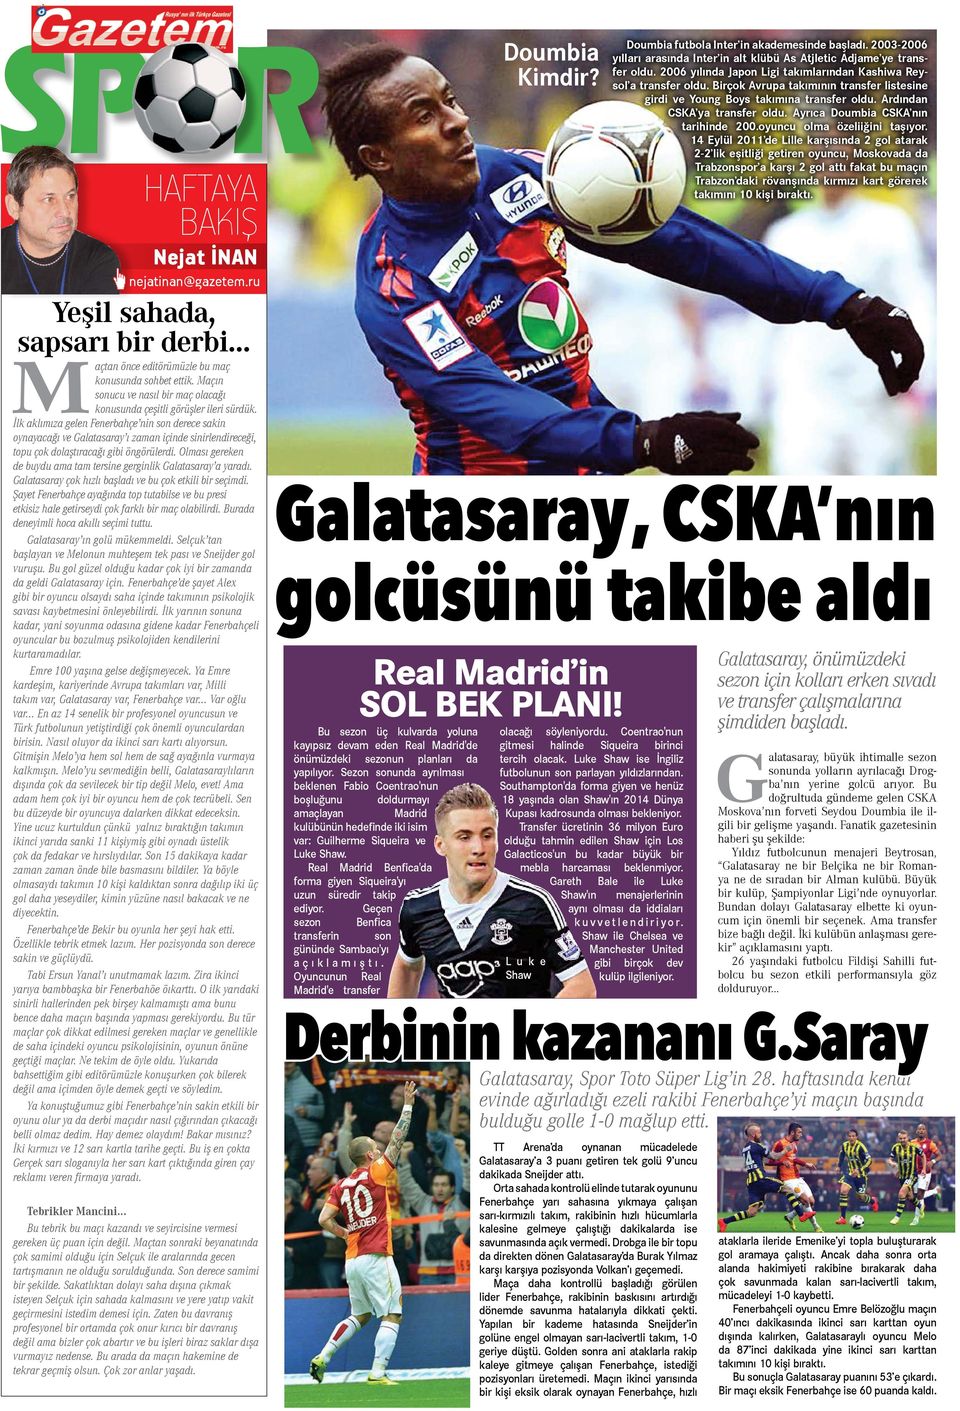 İlk aklımıza gelen Fenerbahçe nin son derece sakin oynayacağı ve Galatasaray ı zaman içinde sinirlendireceği, topu çok dolaştıracağı gibi öngörülerdi.